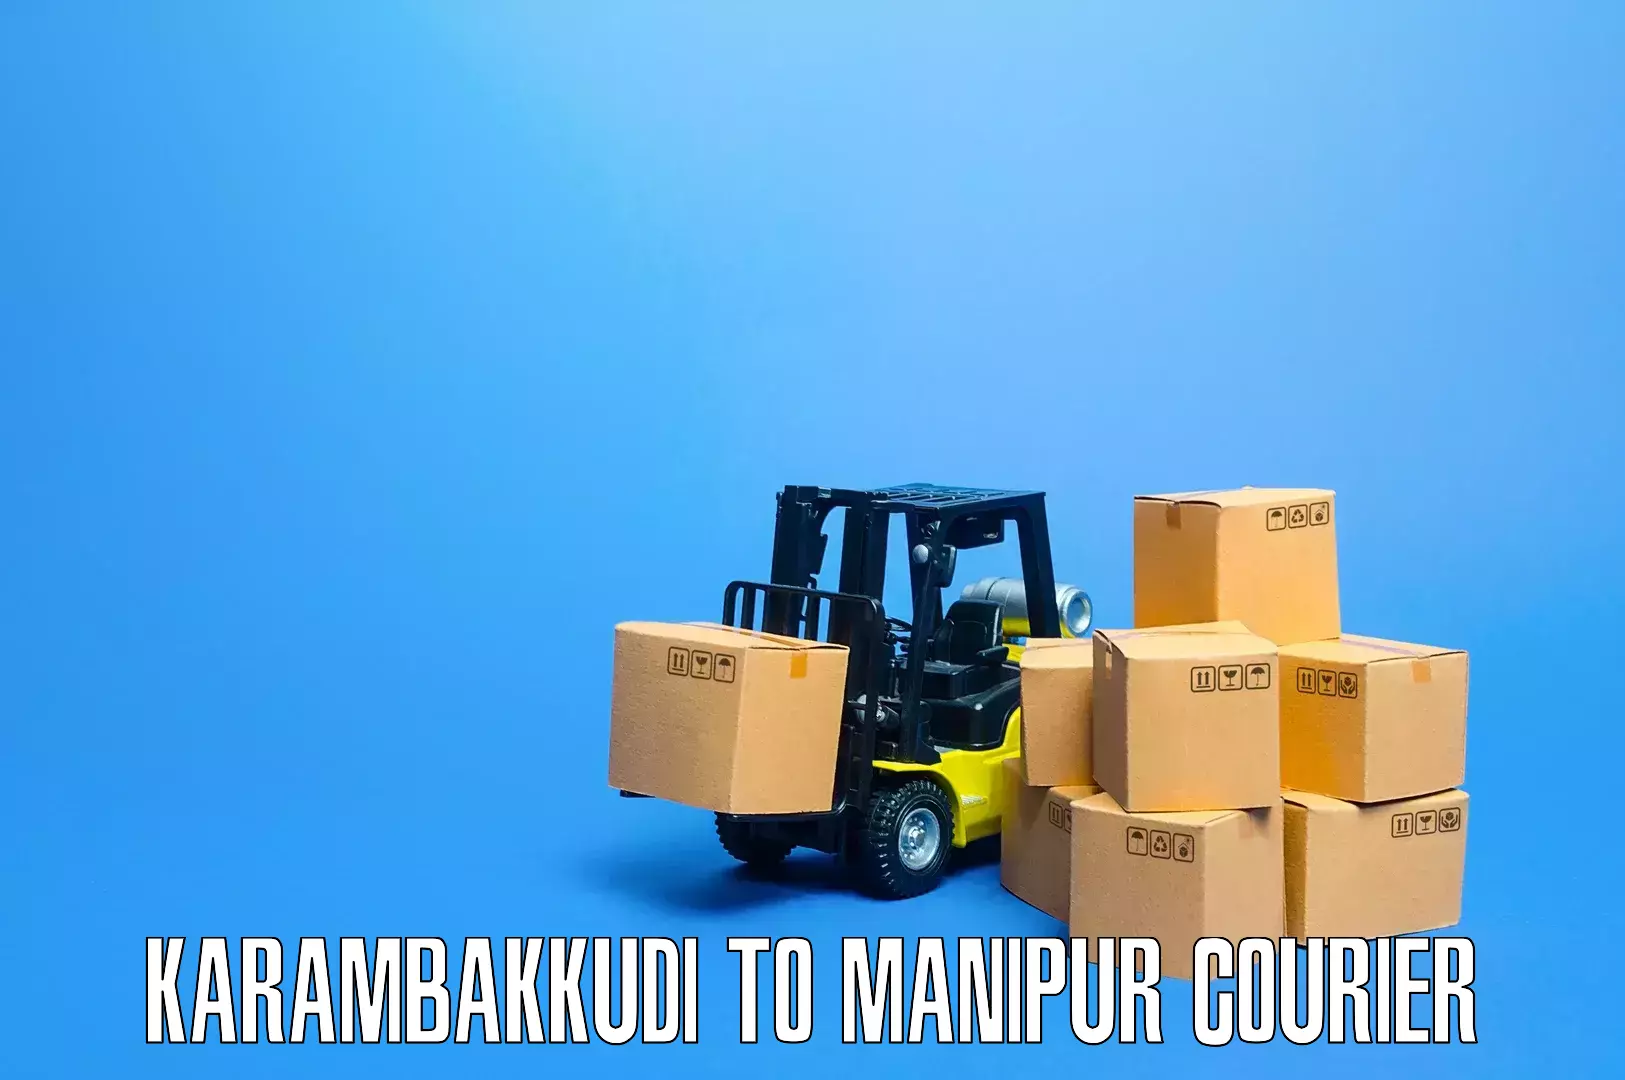 Expert moving and storage Karambakkudi to Moirang